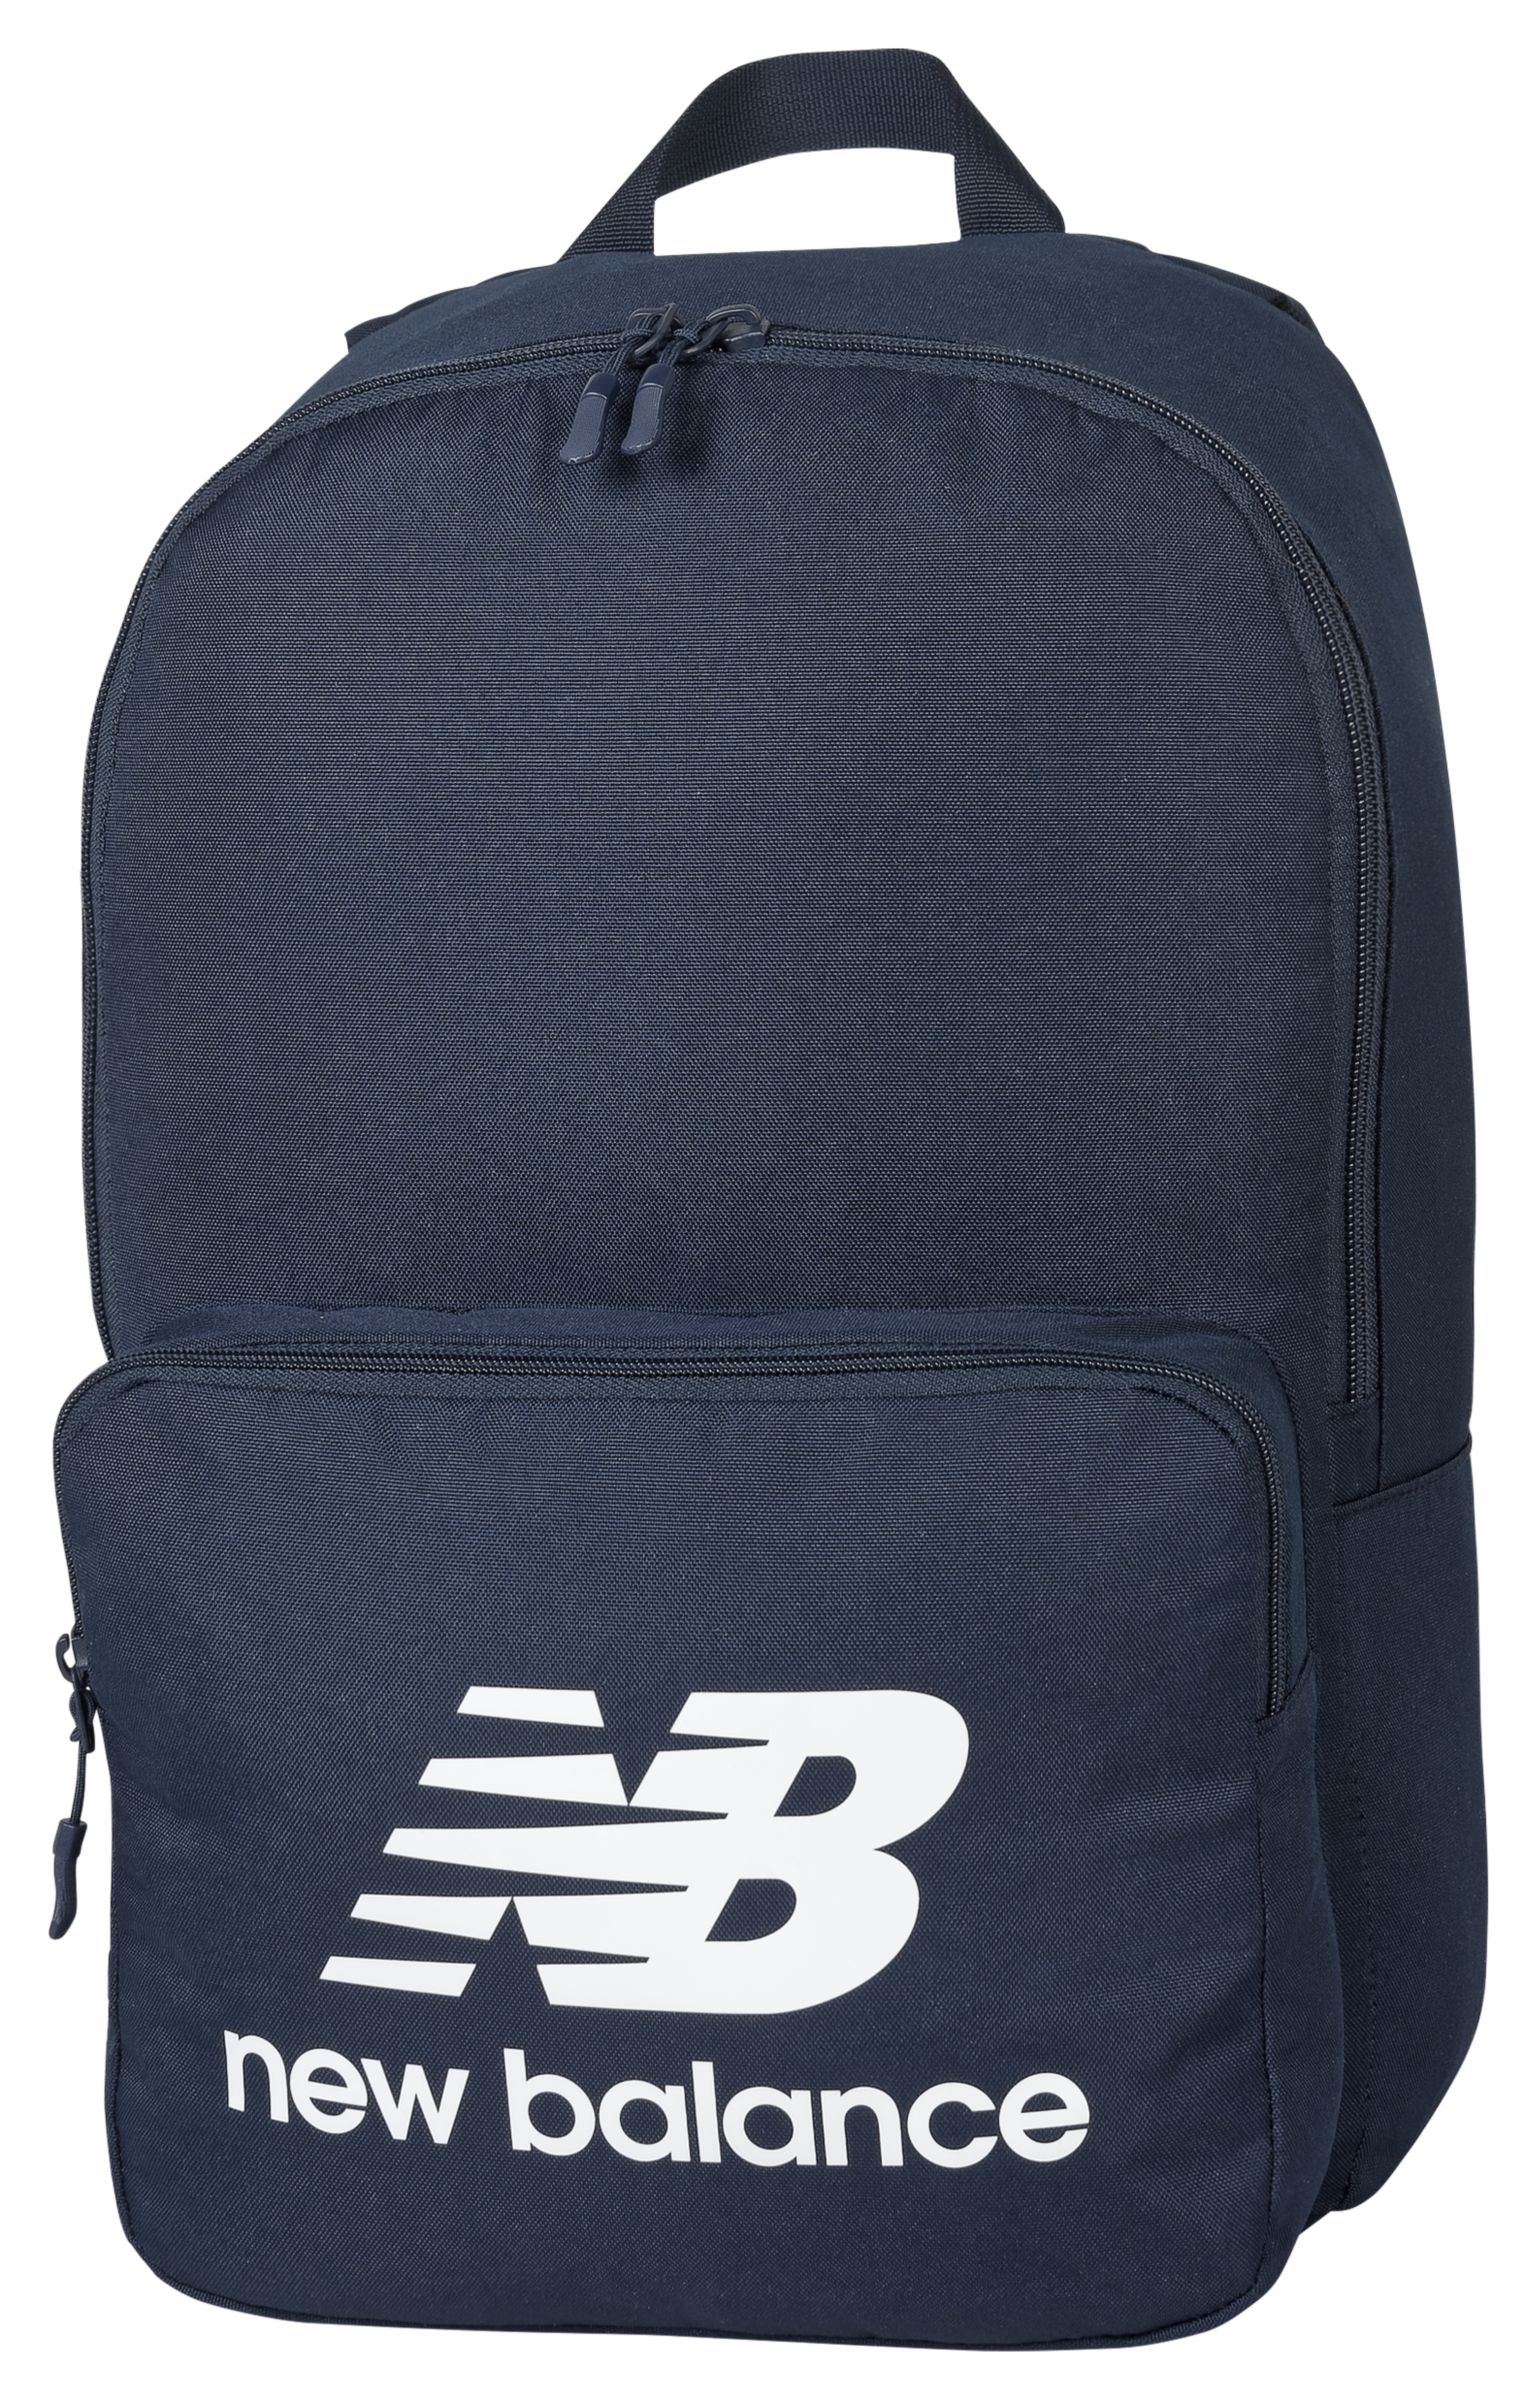 new balance backpack uk